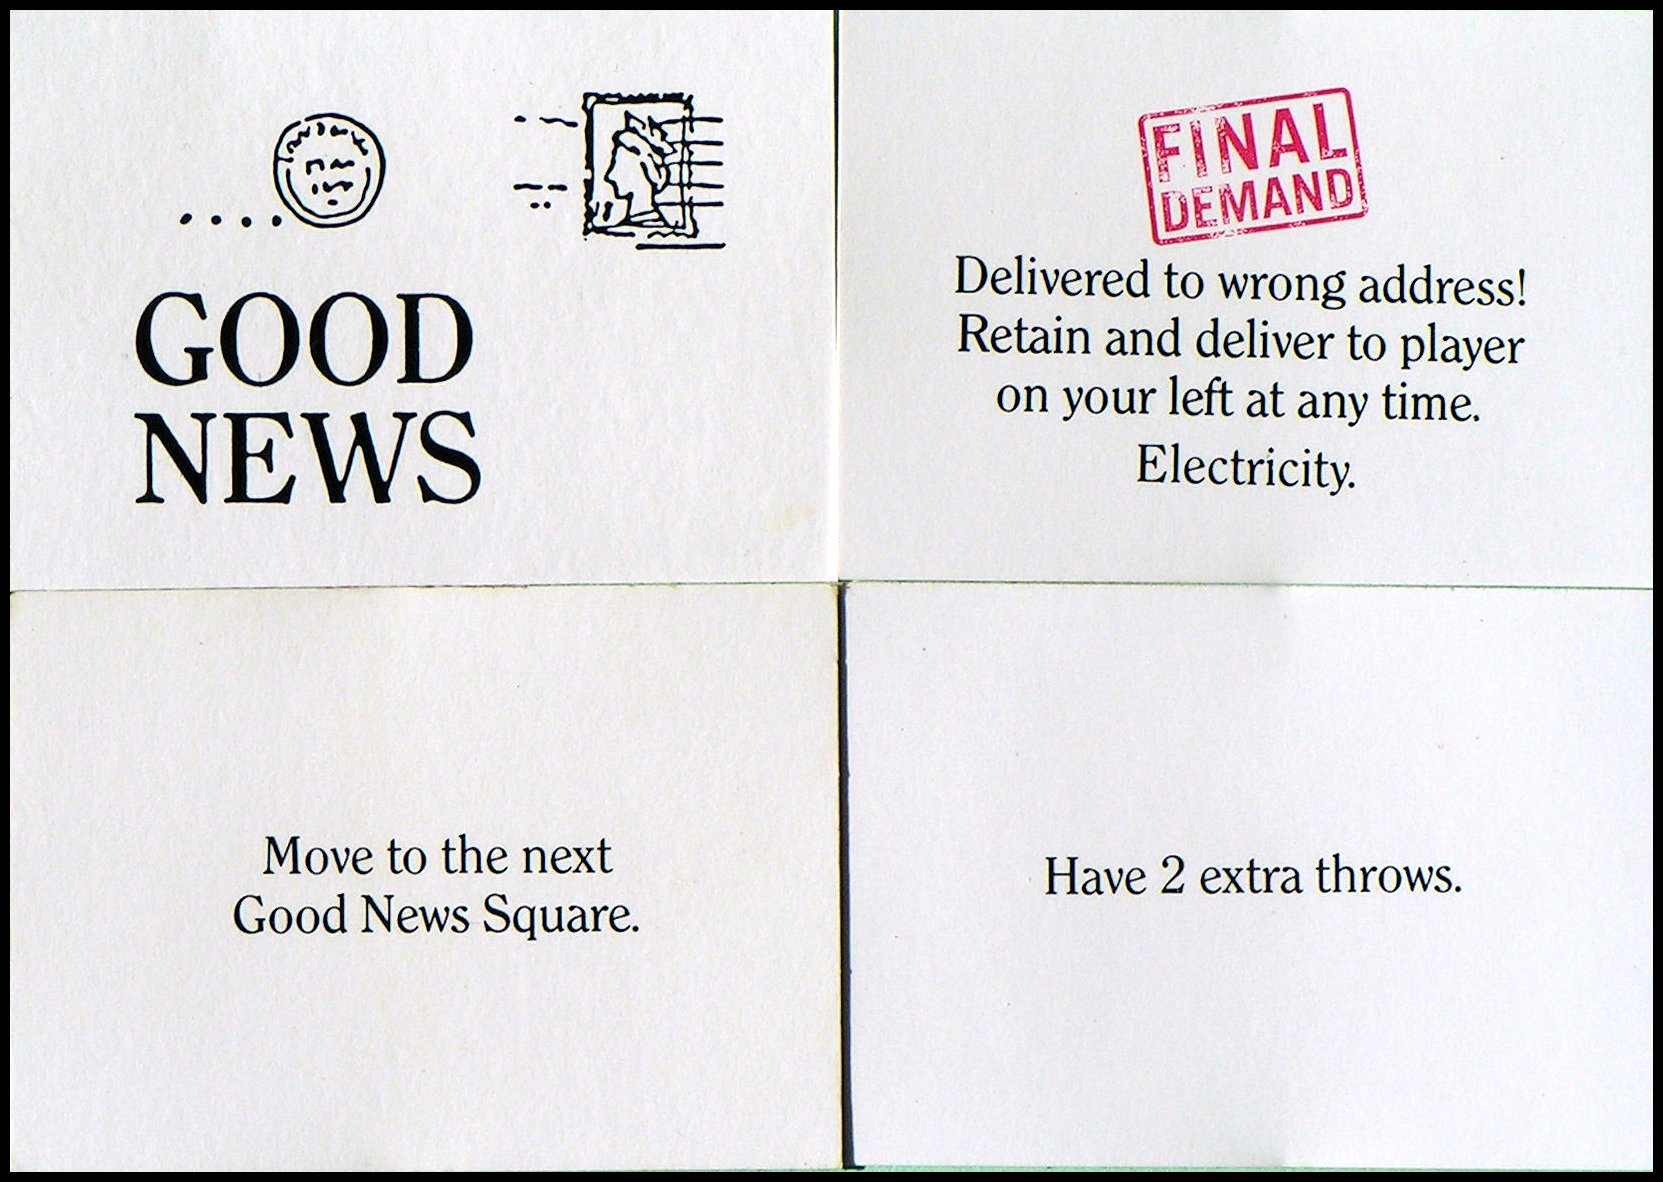 Final Demand - Good News Cards